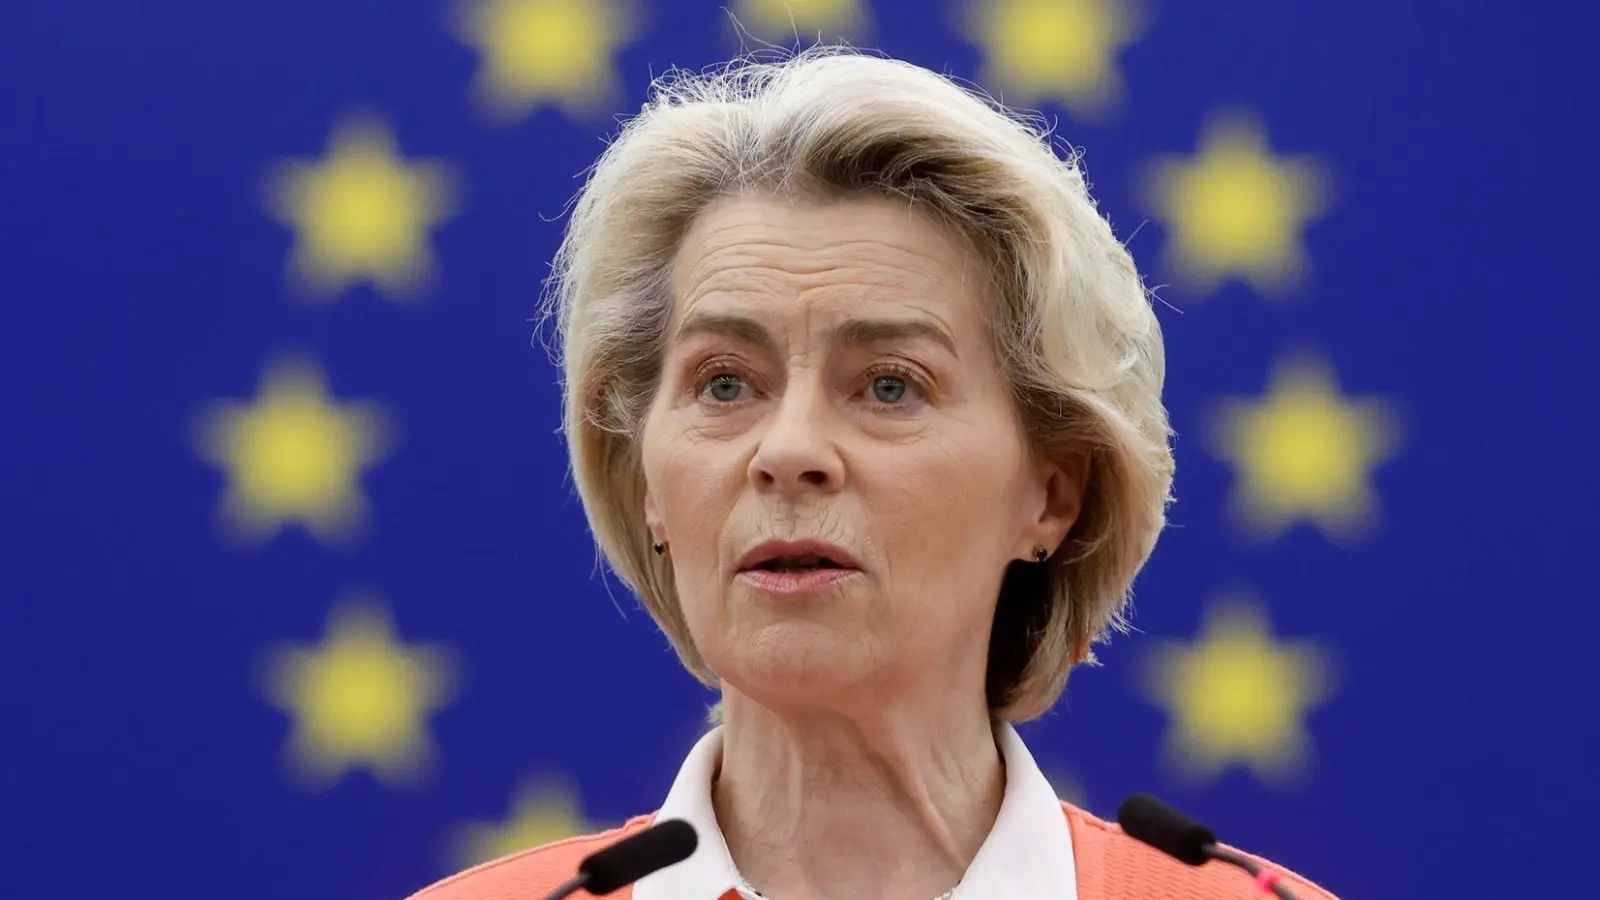 Die EU-Kommission will nach Angaben von Kommissionspräsidentin Ursula von der Leyen höhere Zölle auf russisches Getreide vorbereiten. (Foto: Jean-Francois Badias/AP/dpa)